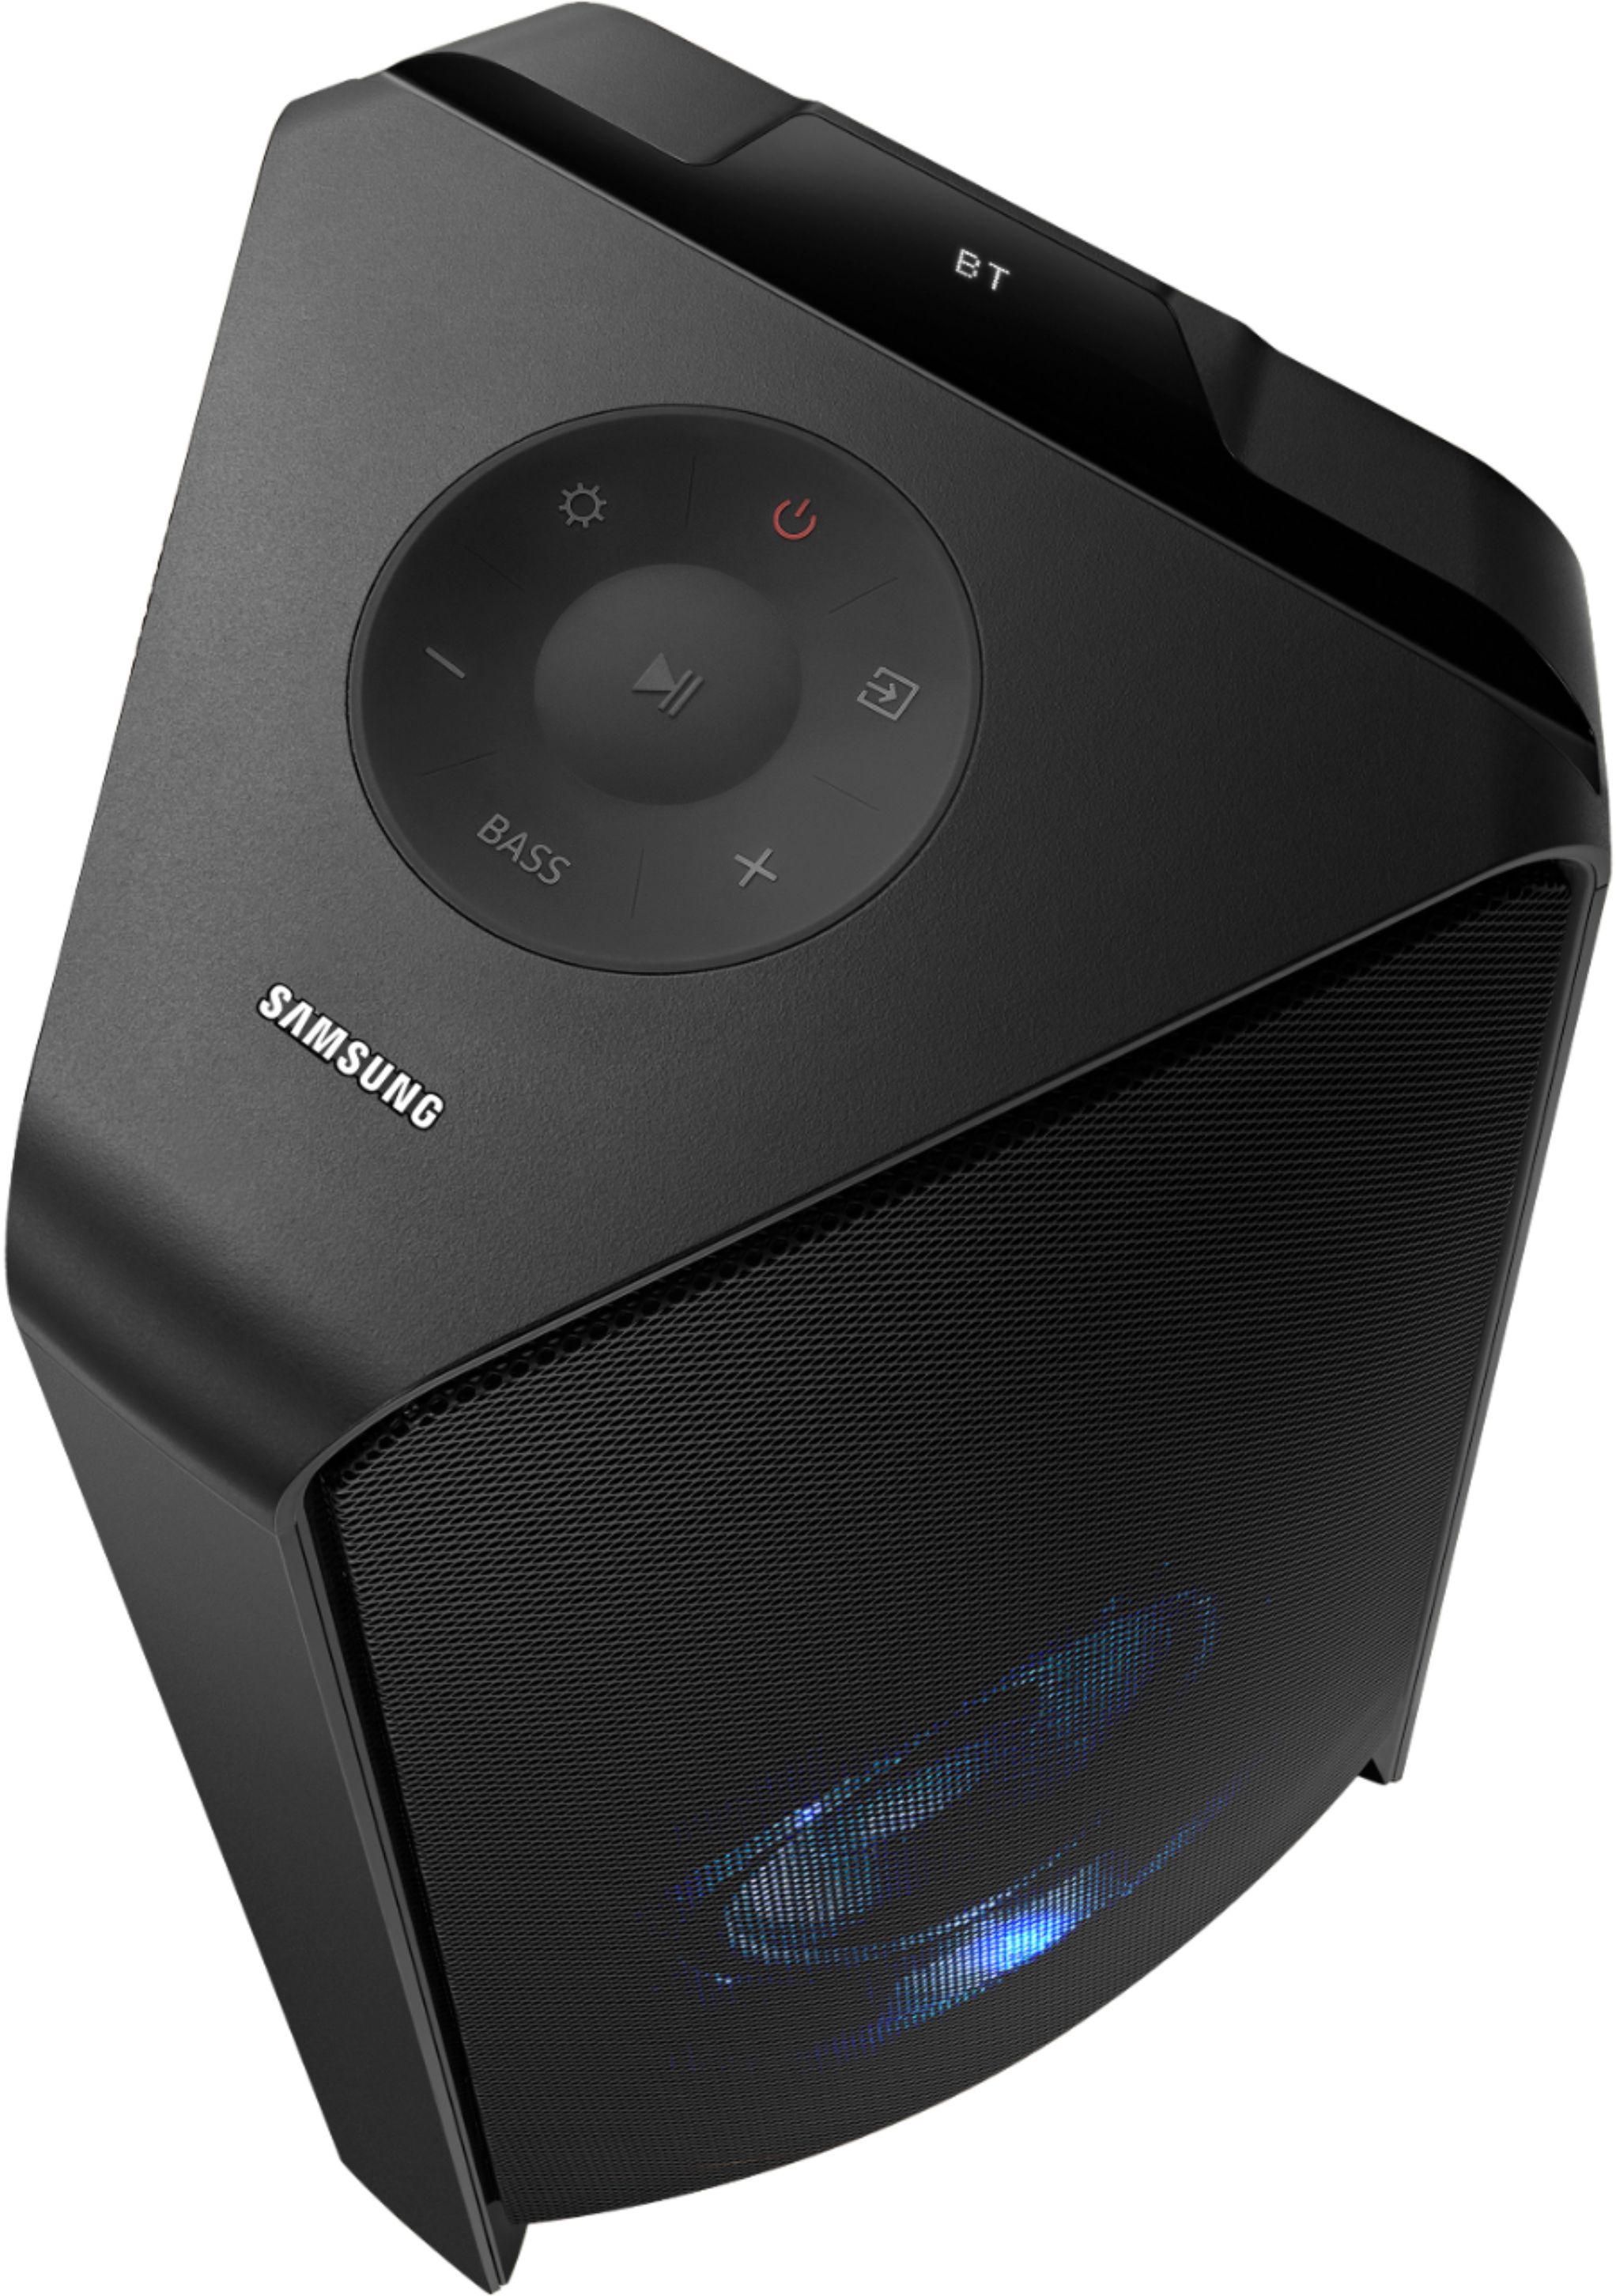 wolf applaus Onverbiddelijk Samsung MX-T50 Sound Tower 500W Wireless Speaker Black MX-T50 - Best Buy